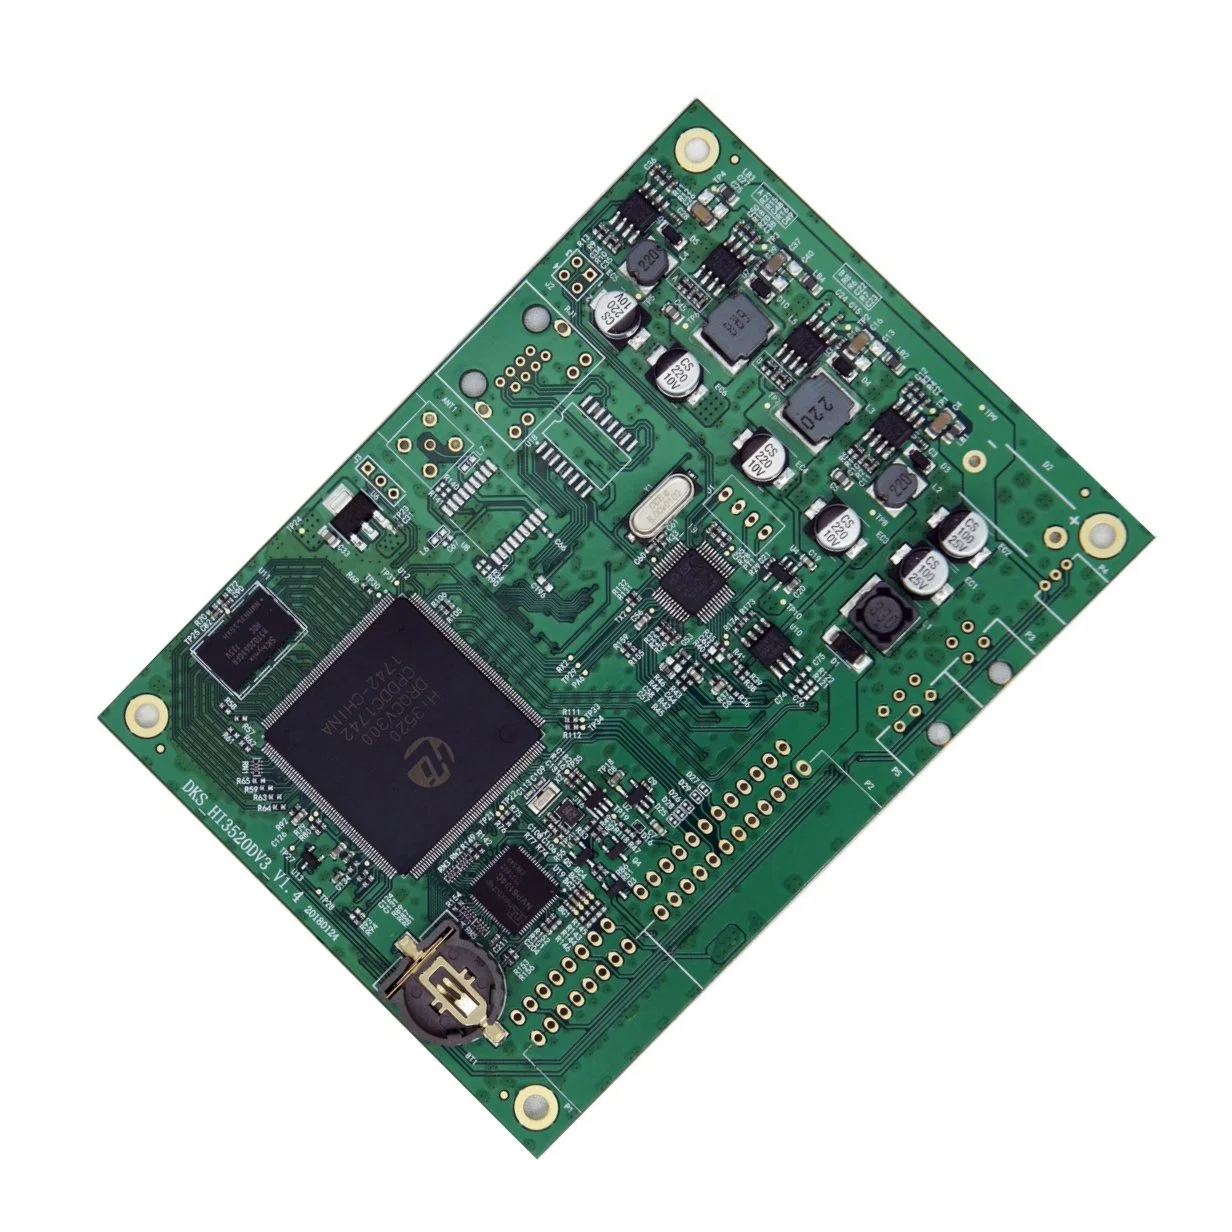 لوحة PCBA متعددة الطبقات الجهة المصنعة نموذج أولي آخر تجميع مجموعة PCBA 94V0 Fr4 مجموعة PCBA لمنتجات الاتصالات UL